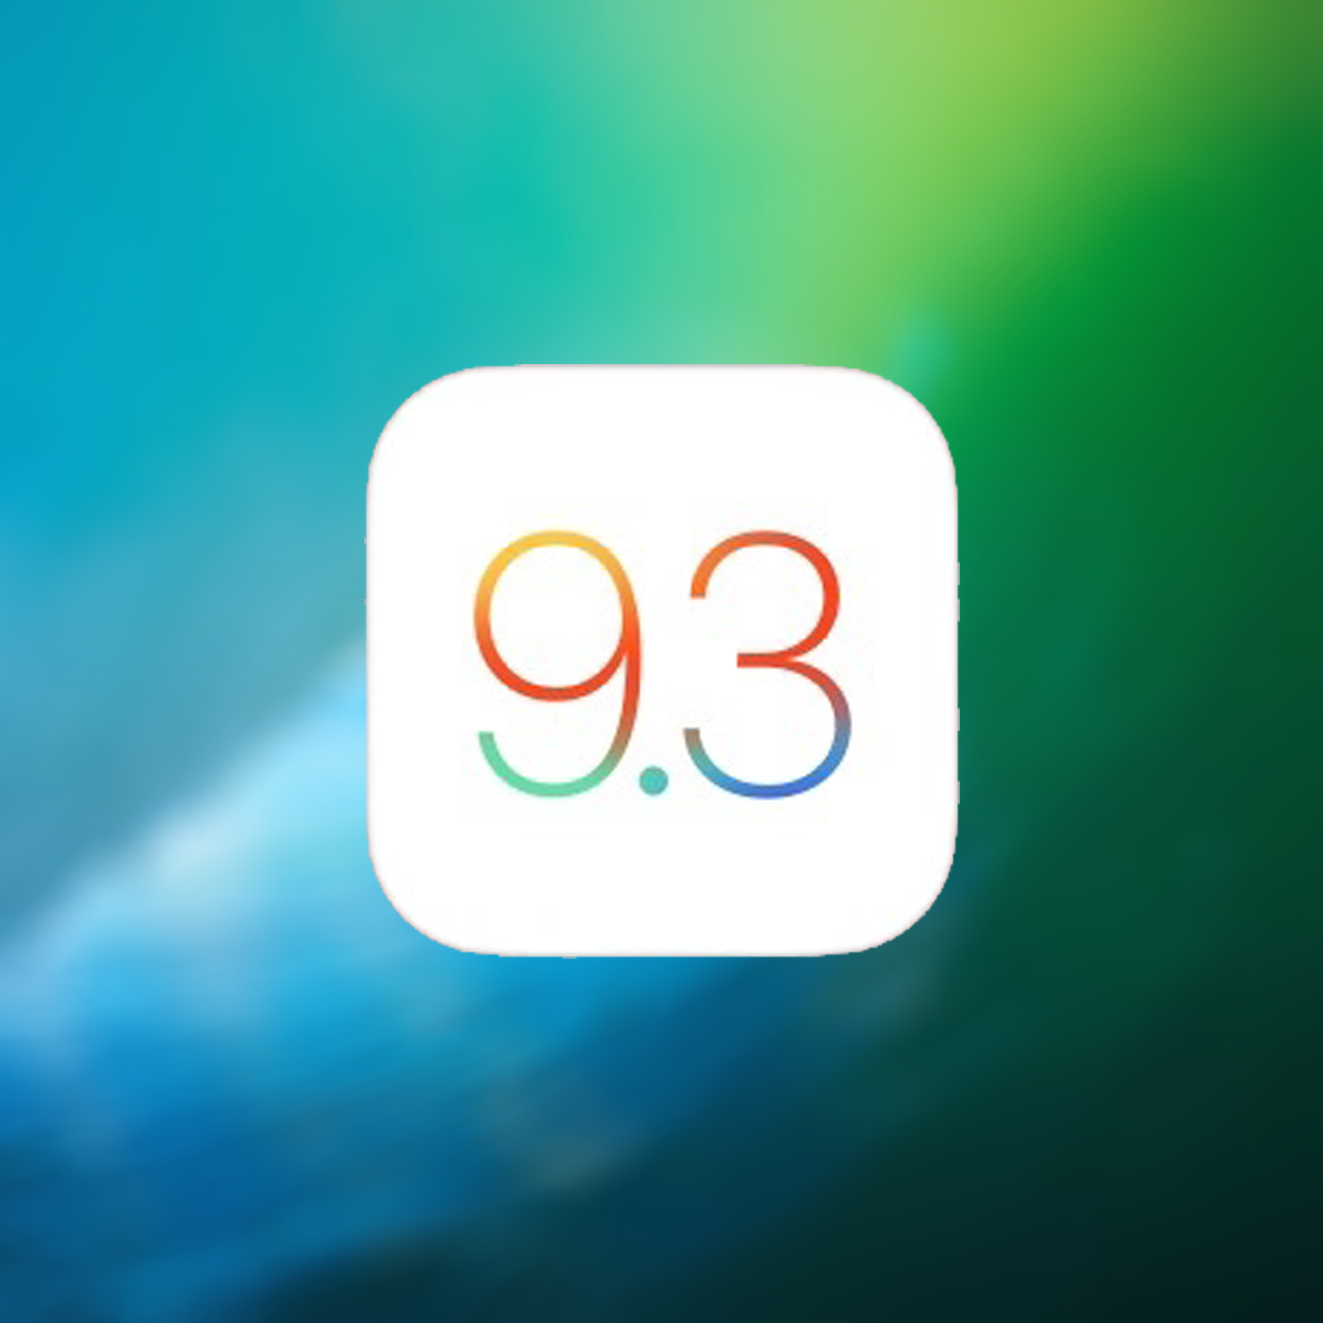 iOS 9.3.3 update nu beschikbaar